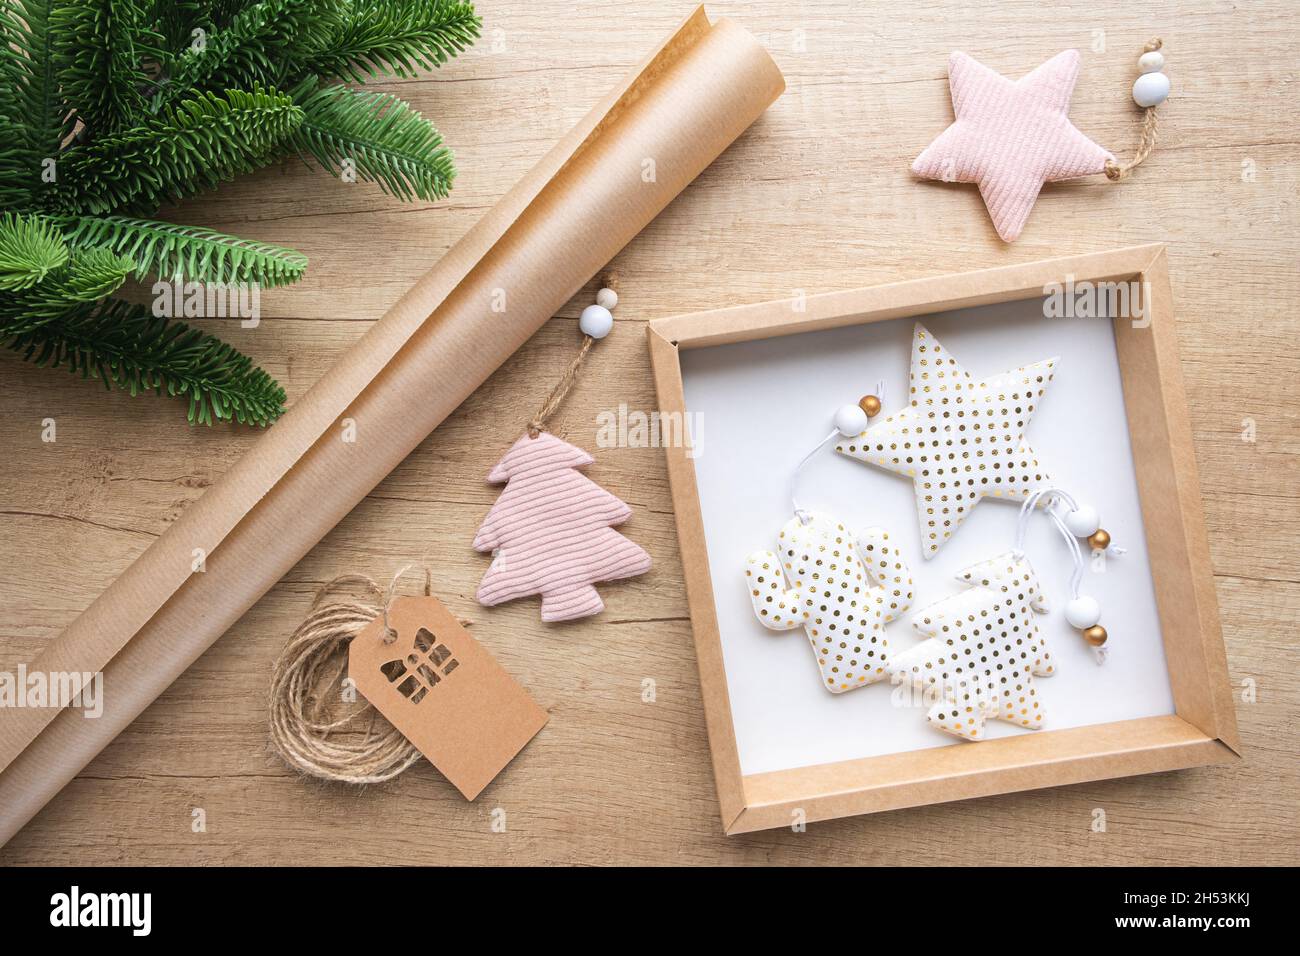 Boîte cadeau avec jouets de Noël en tissu blanc à pois d'or, rouleau de papier kraft, branche de sapin sur fond de bois.Concept d'emballage écologique, zéro Banque D'Images